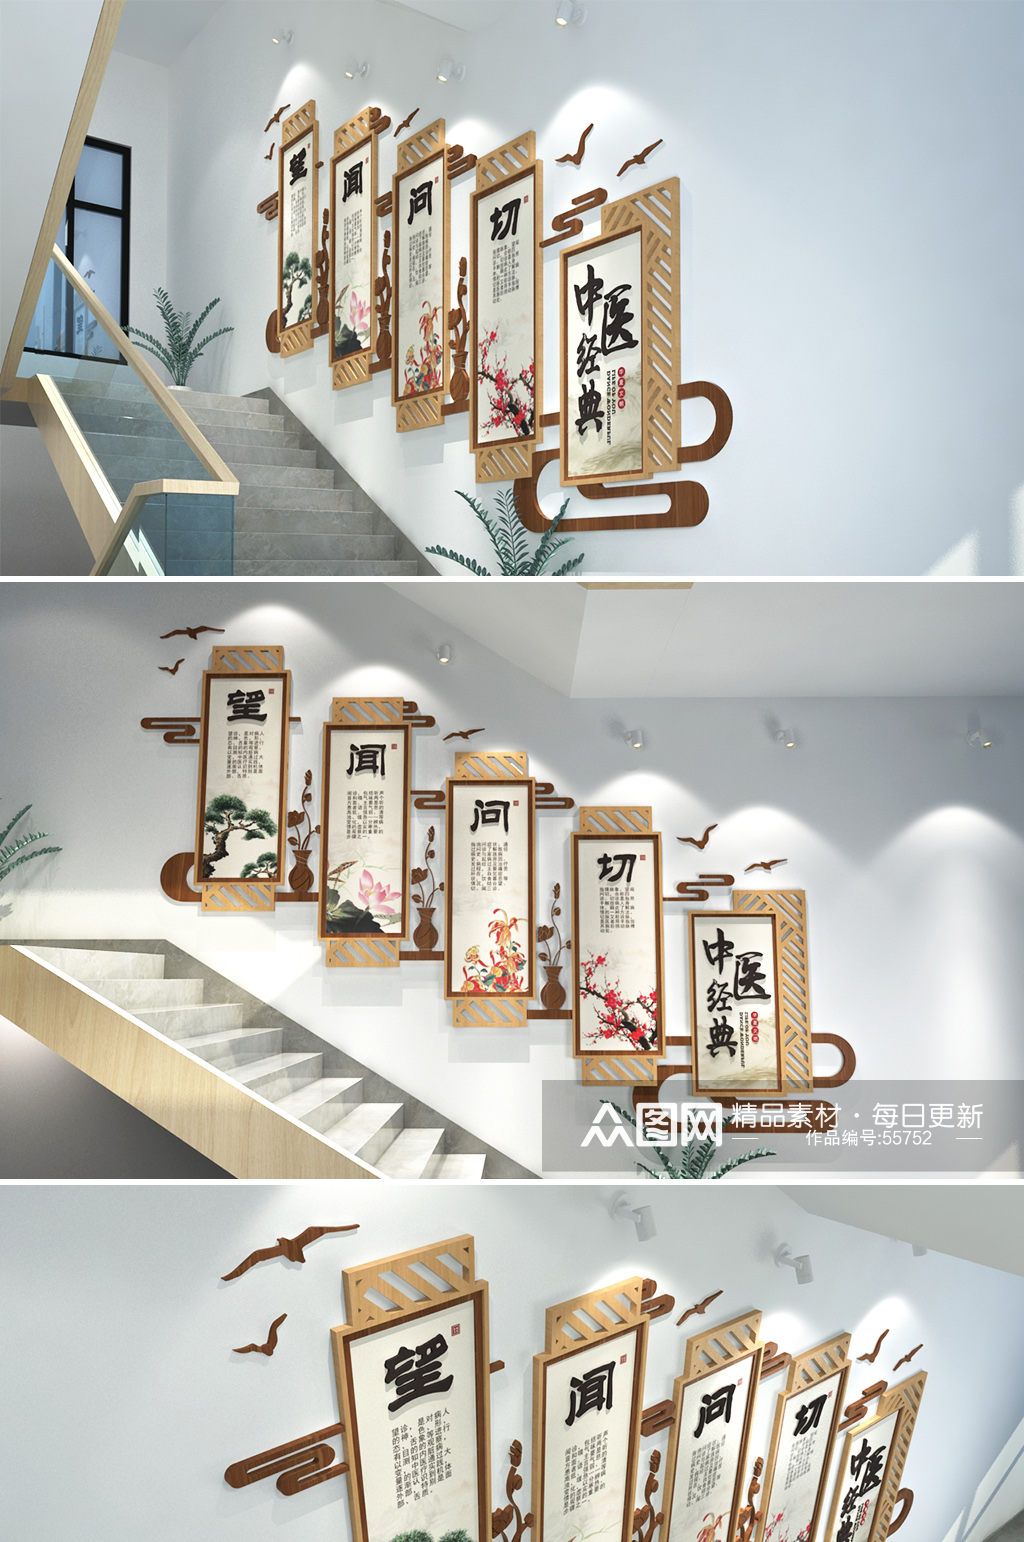 中医经典医院诊所 楼梯文化墙创意设计图片素材